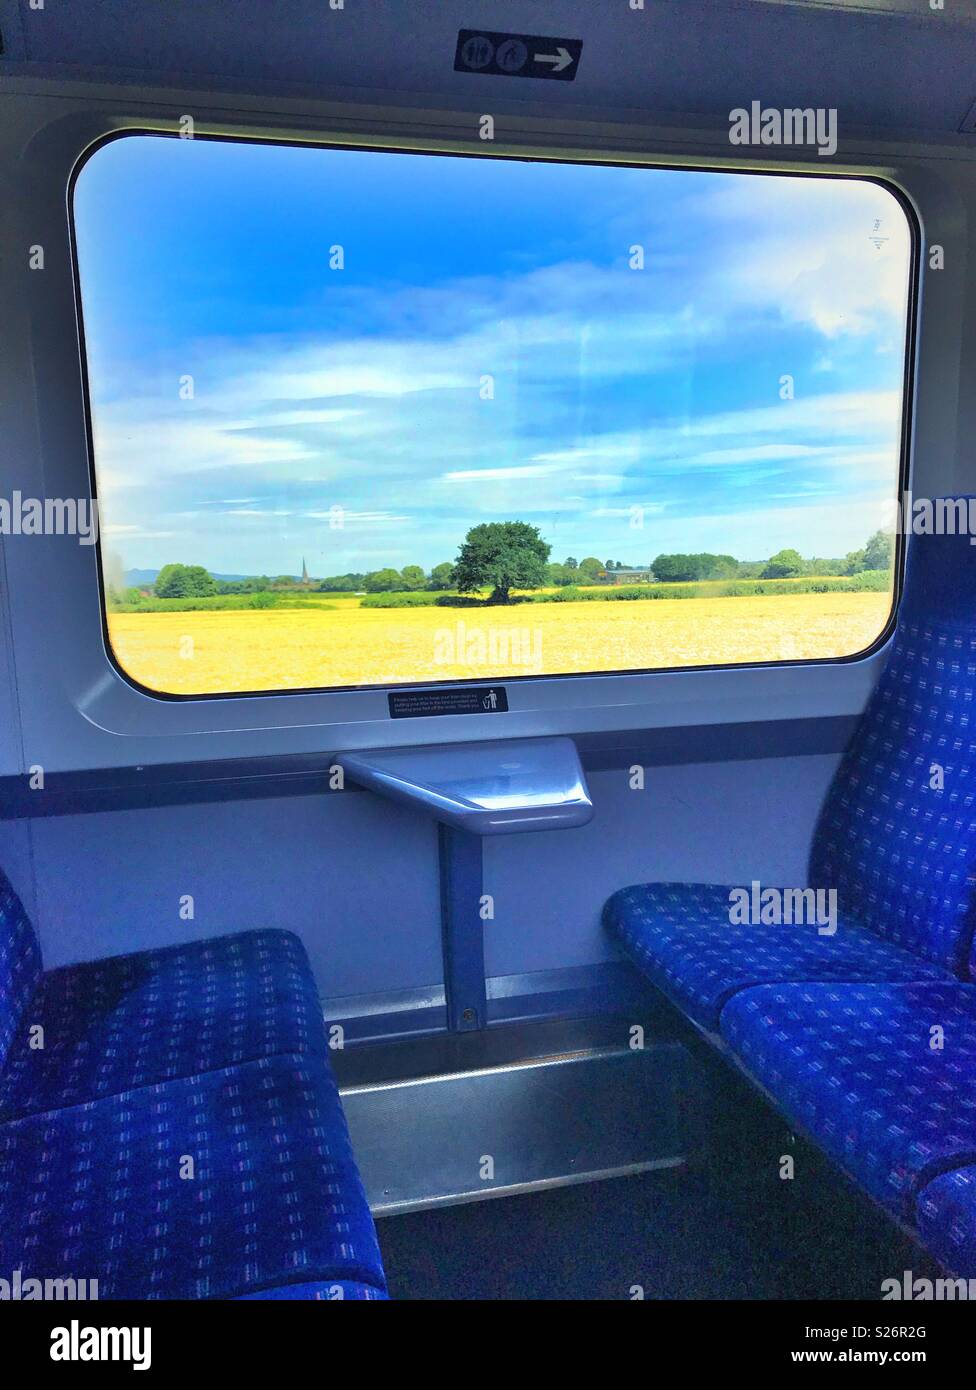 Auf der Suche durch das Fenster eines leeren Zug auf die vorbeiziehende  Landschaft Stockfotografie - Alamy